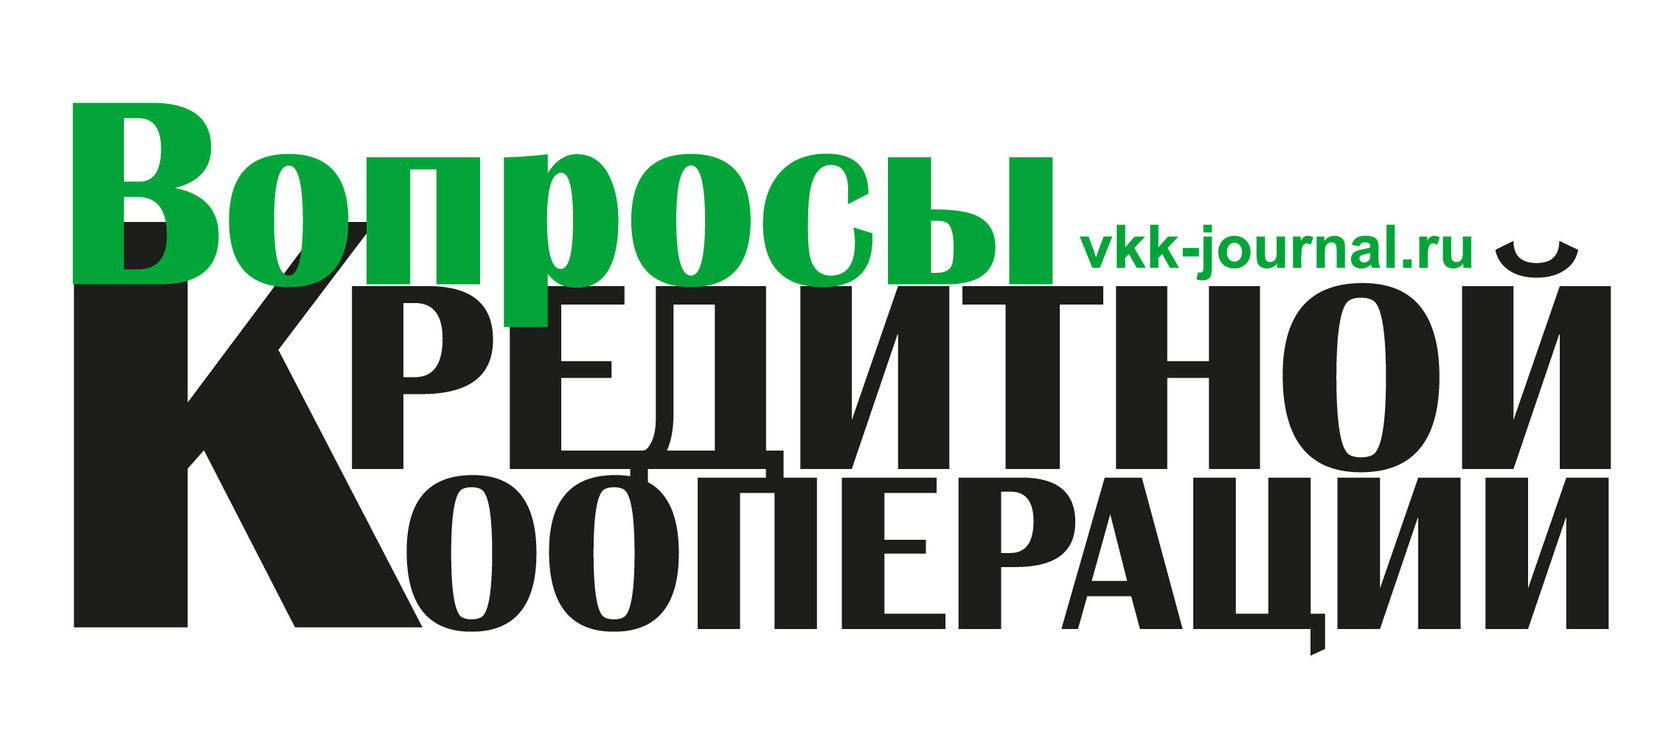 http://vkk-journal.ru